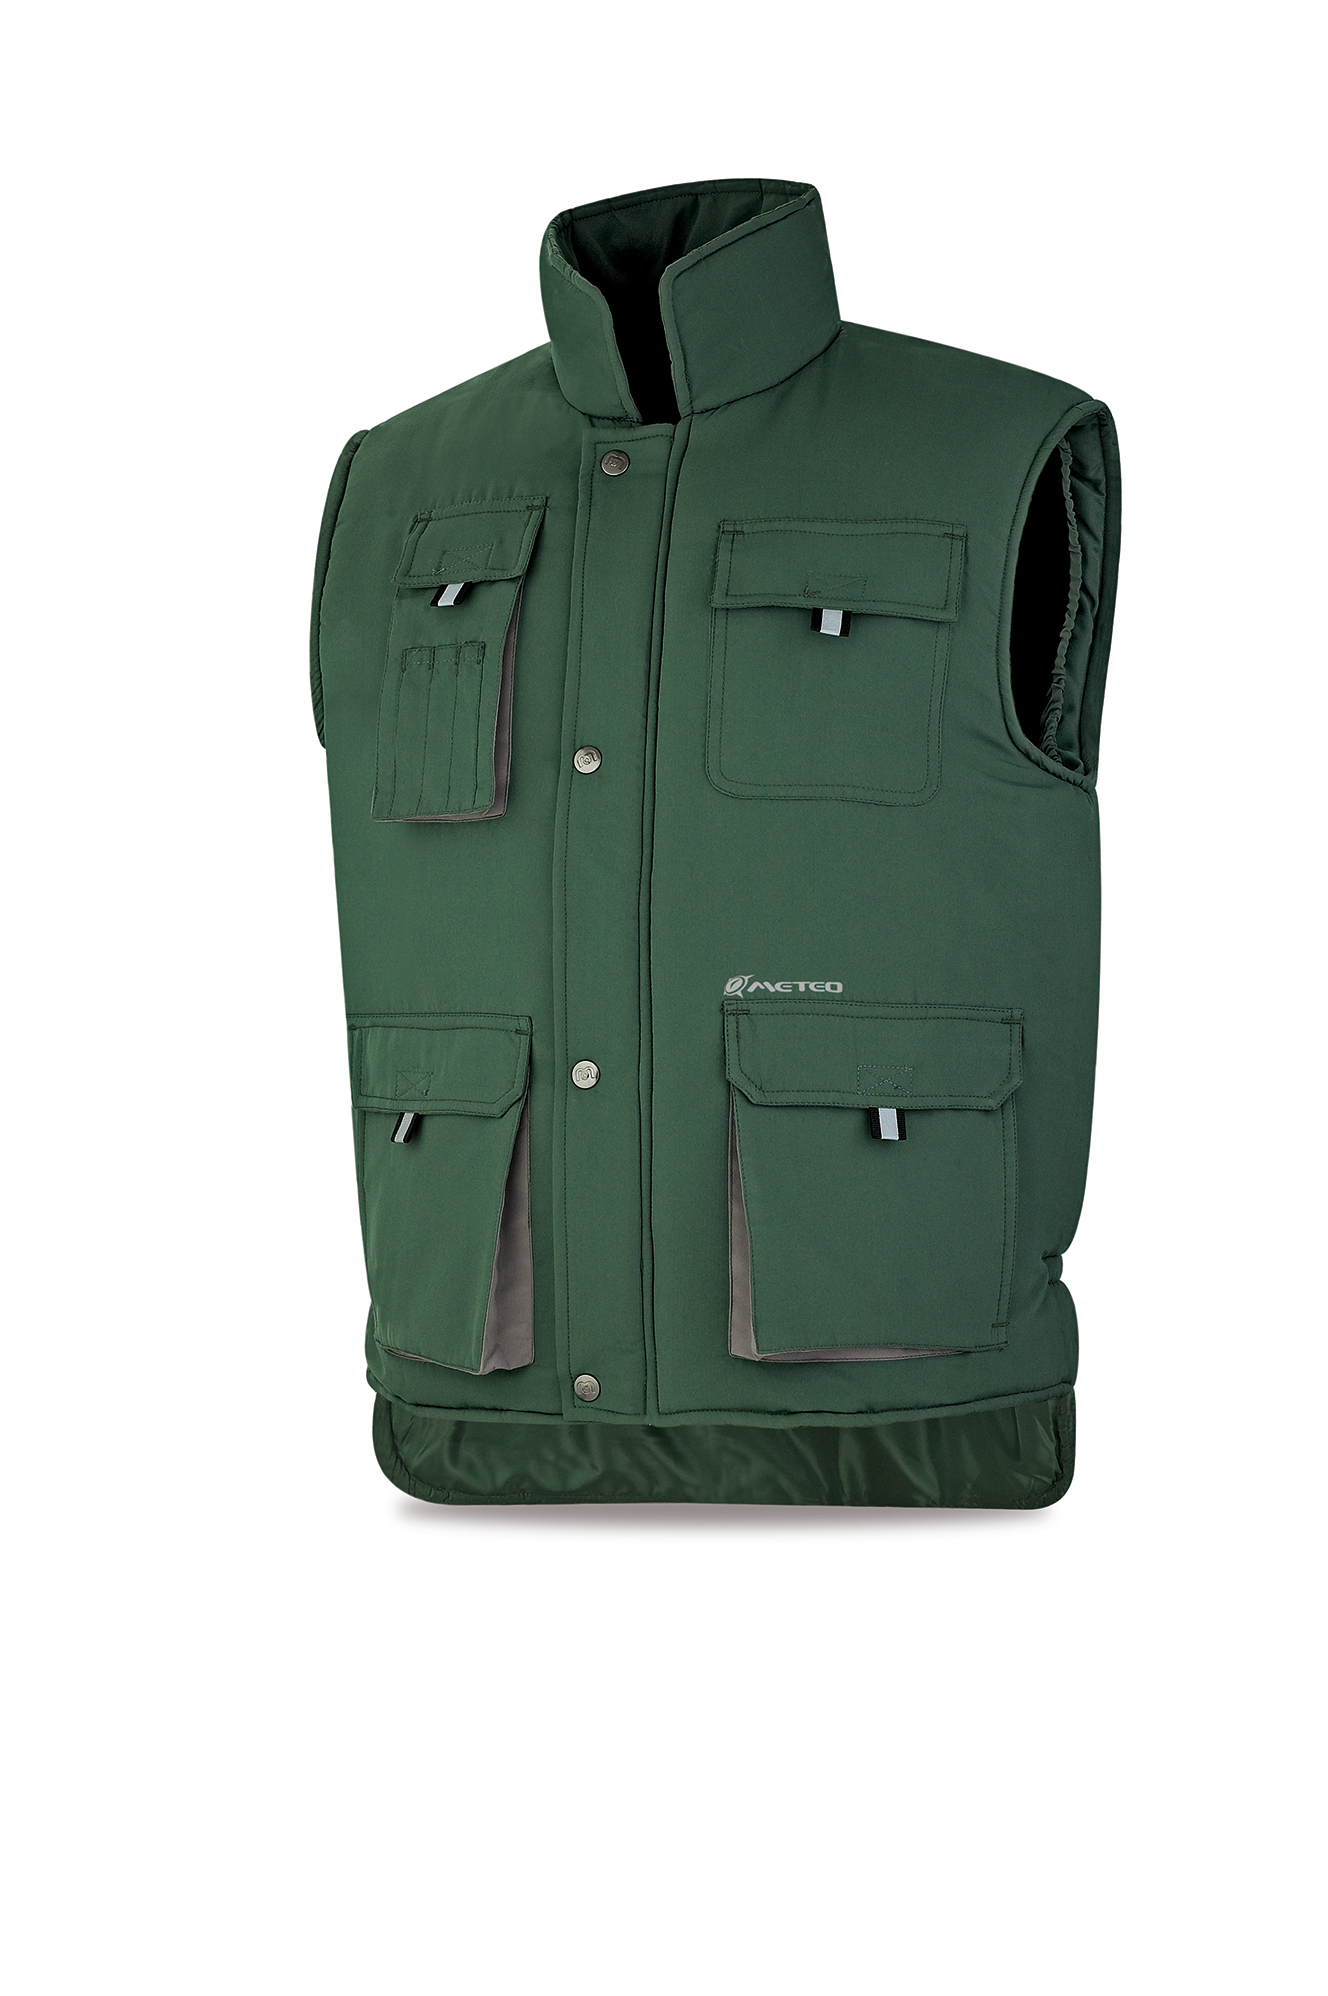 288-VMRV Coats and Rain Gear  Jackets Multi-pocket Sleeveless jacket model HEIMDALL.